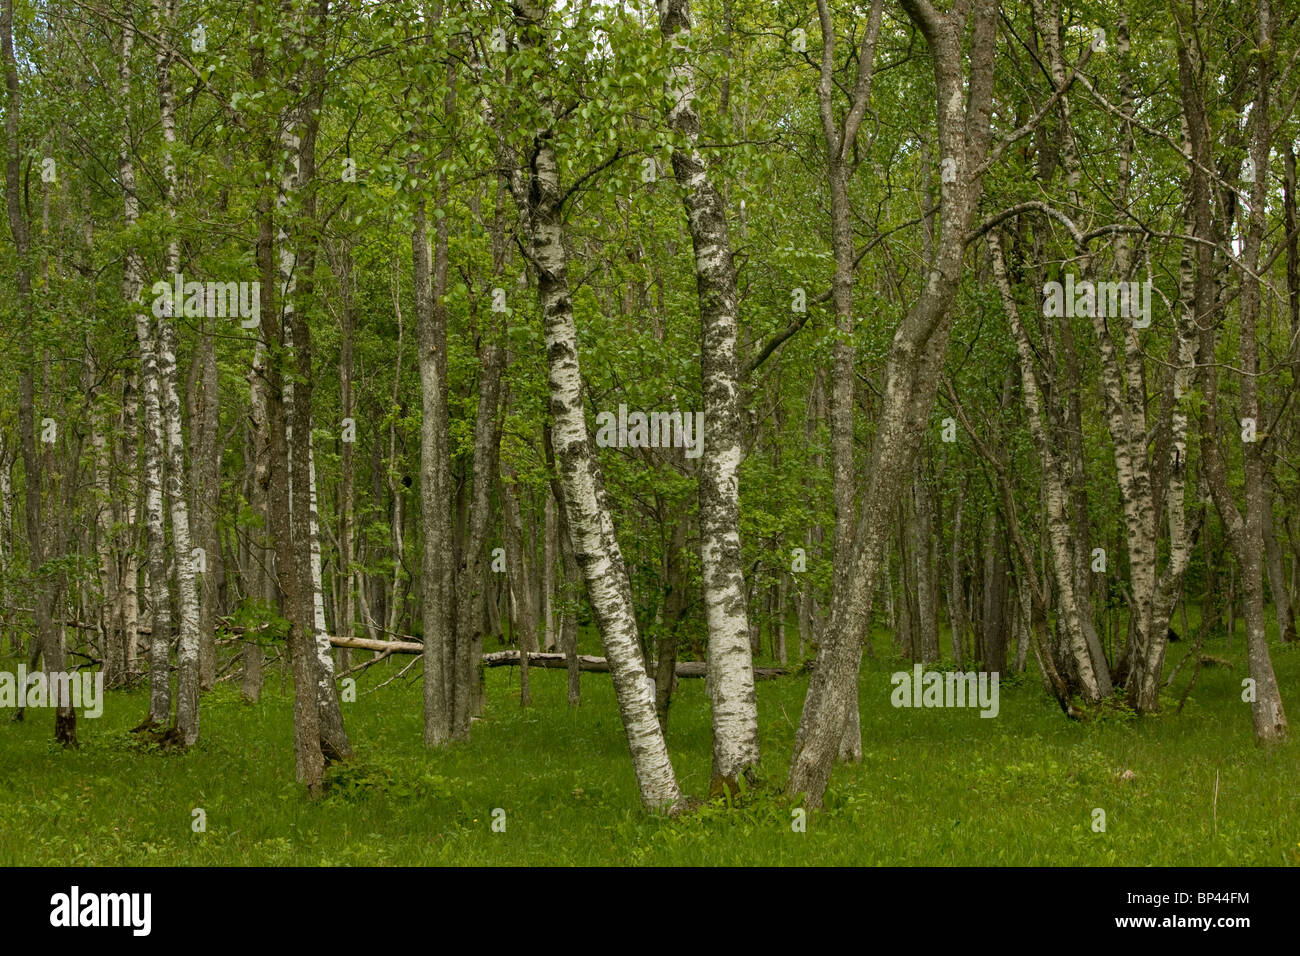 Los troncos de abedul pubescente Laelatu pradera arbolada, Puhtu-Laelatu Reserva; costa oeste de Estonia Foto de stock